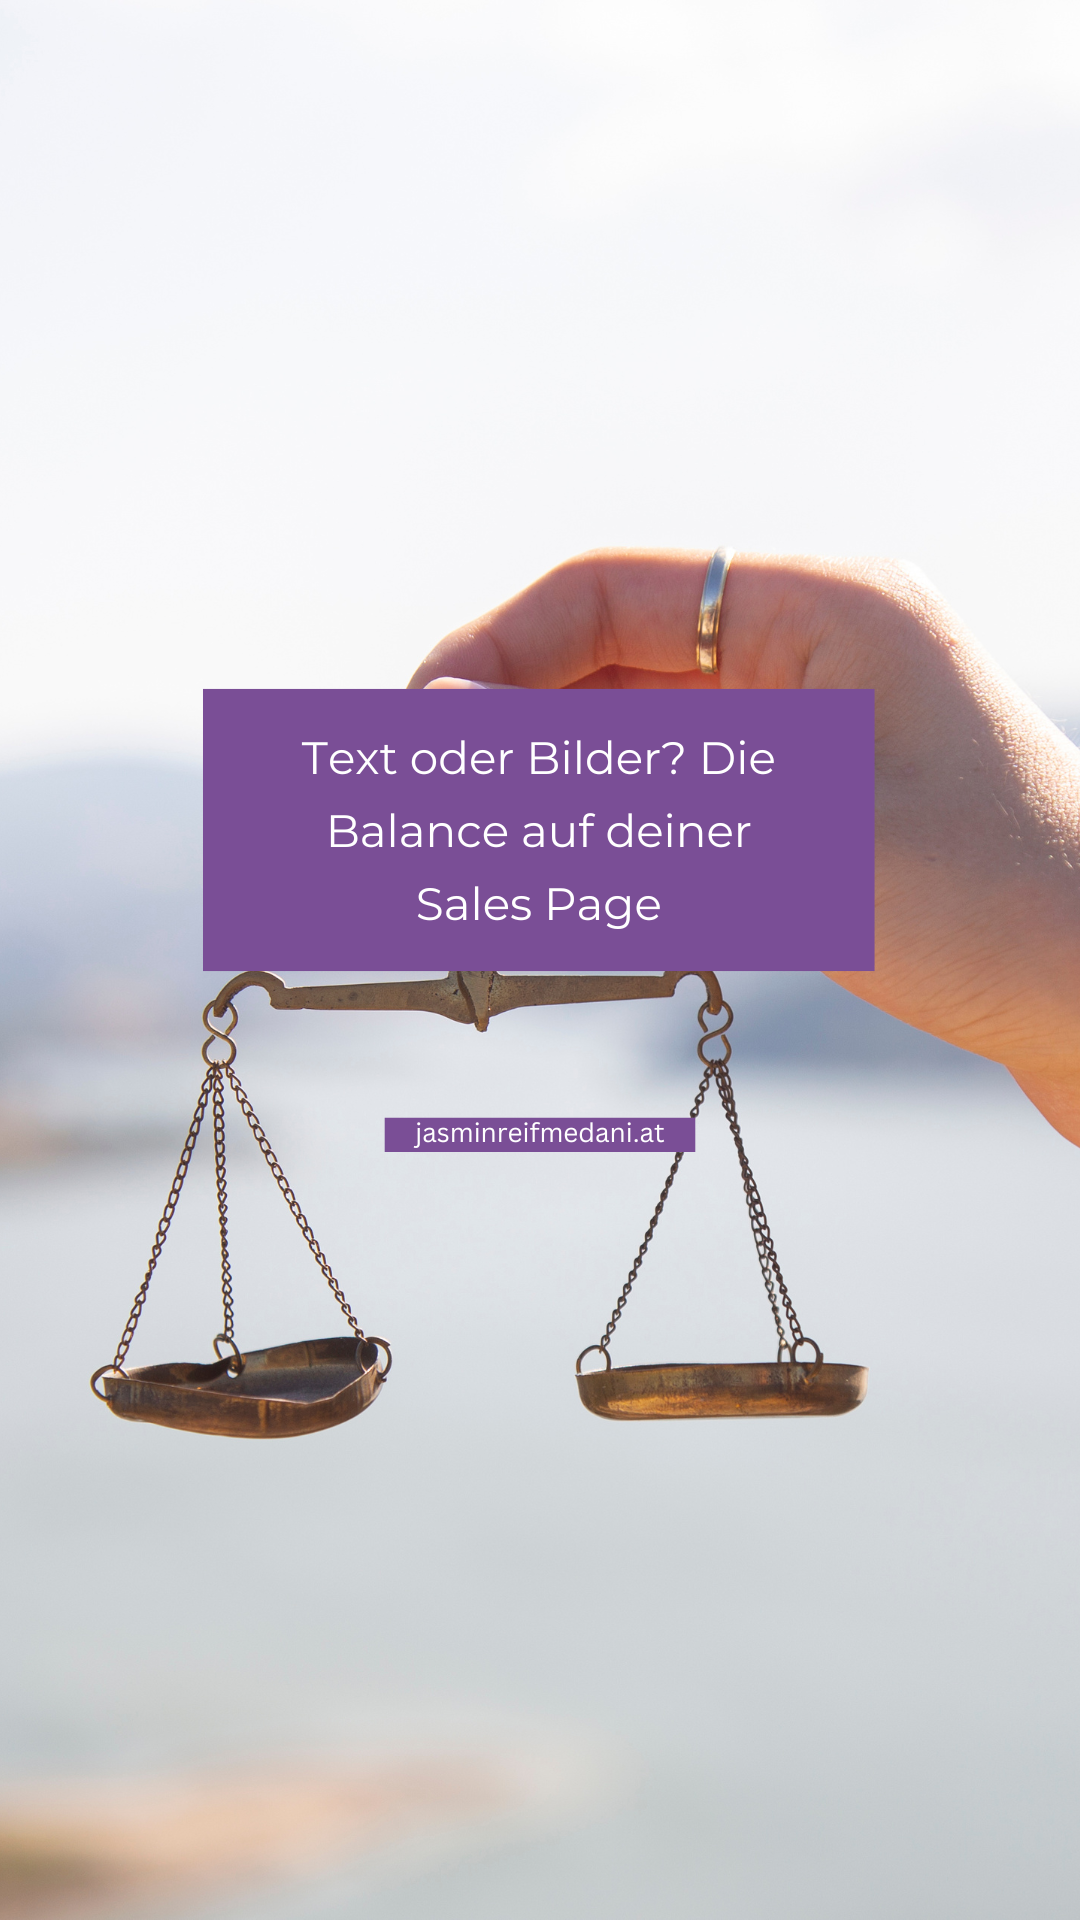 Text oder Bilder: Die Balance auf deiner Sales Page